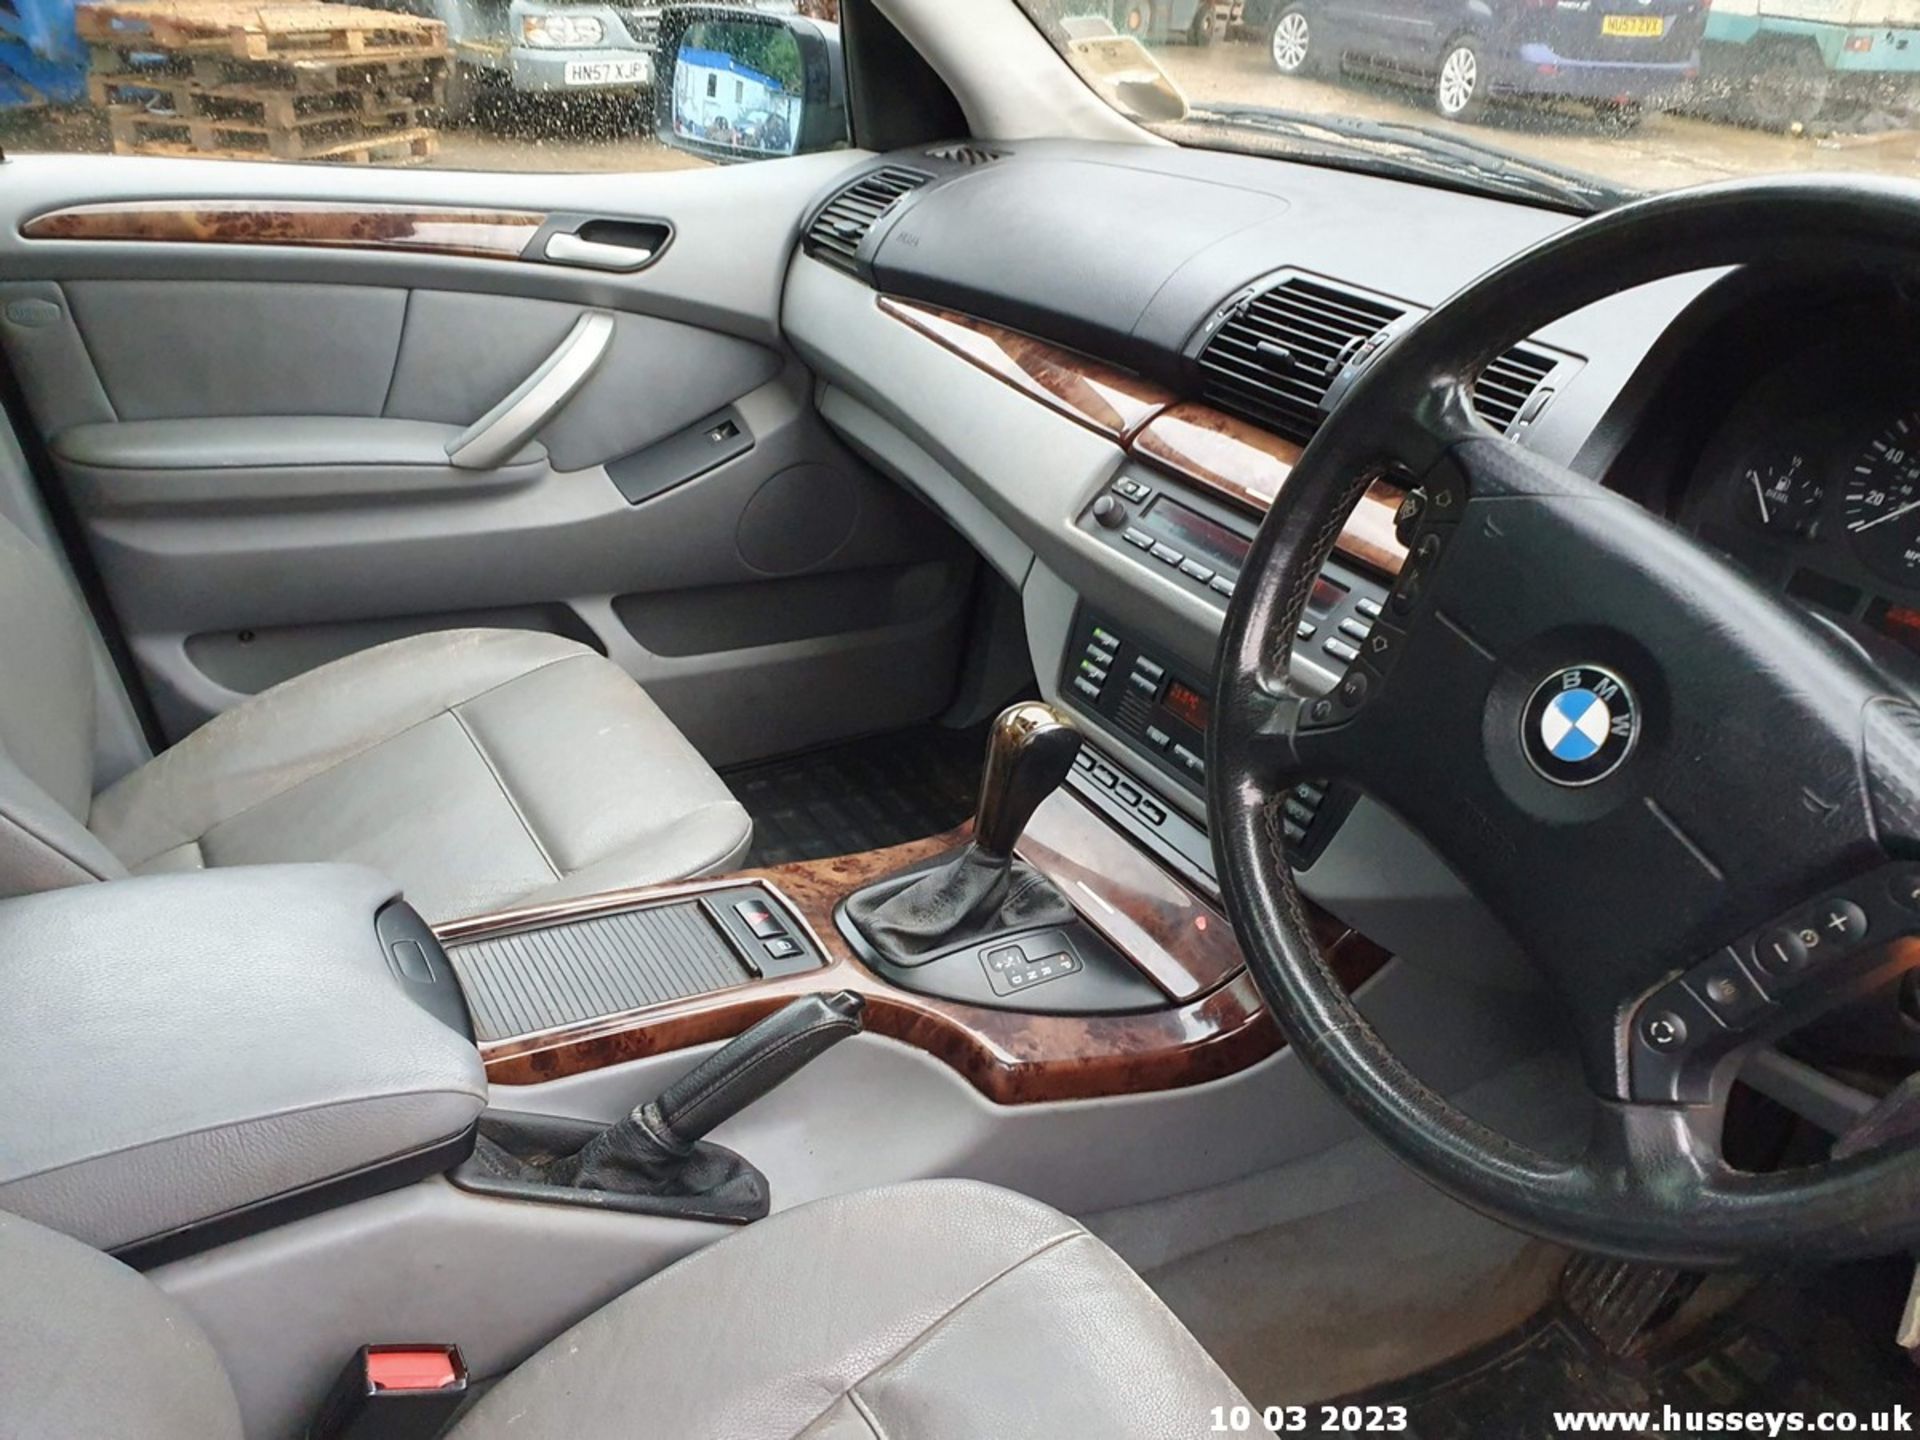 03/53 BMW X5 D AUTO - 2926cc 5dr Estate (Grey, 205k) - Image 16 of 66